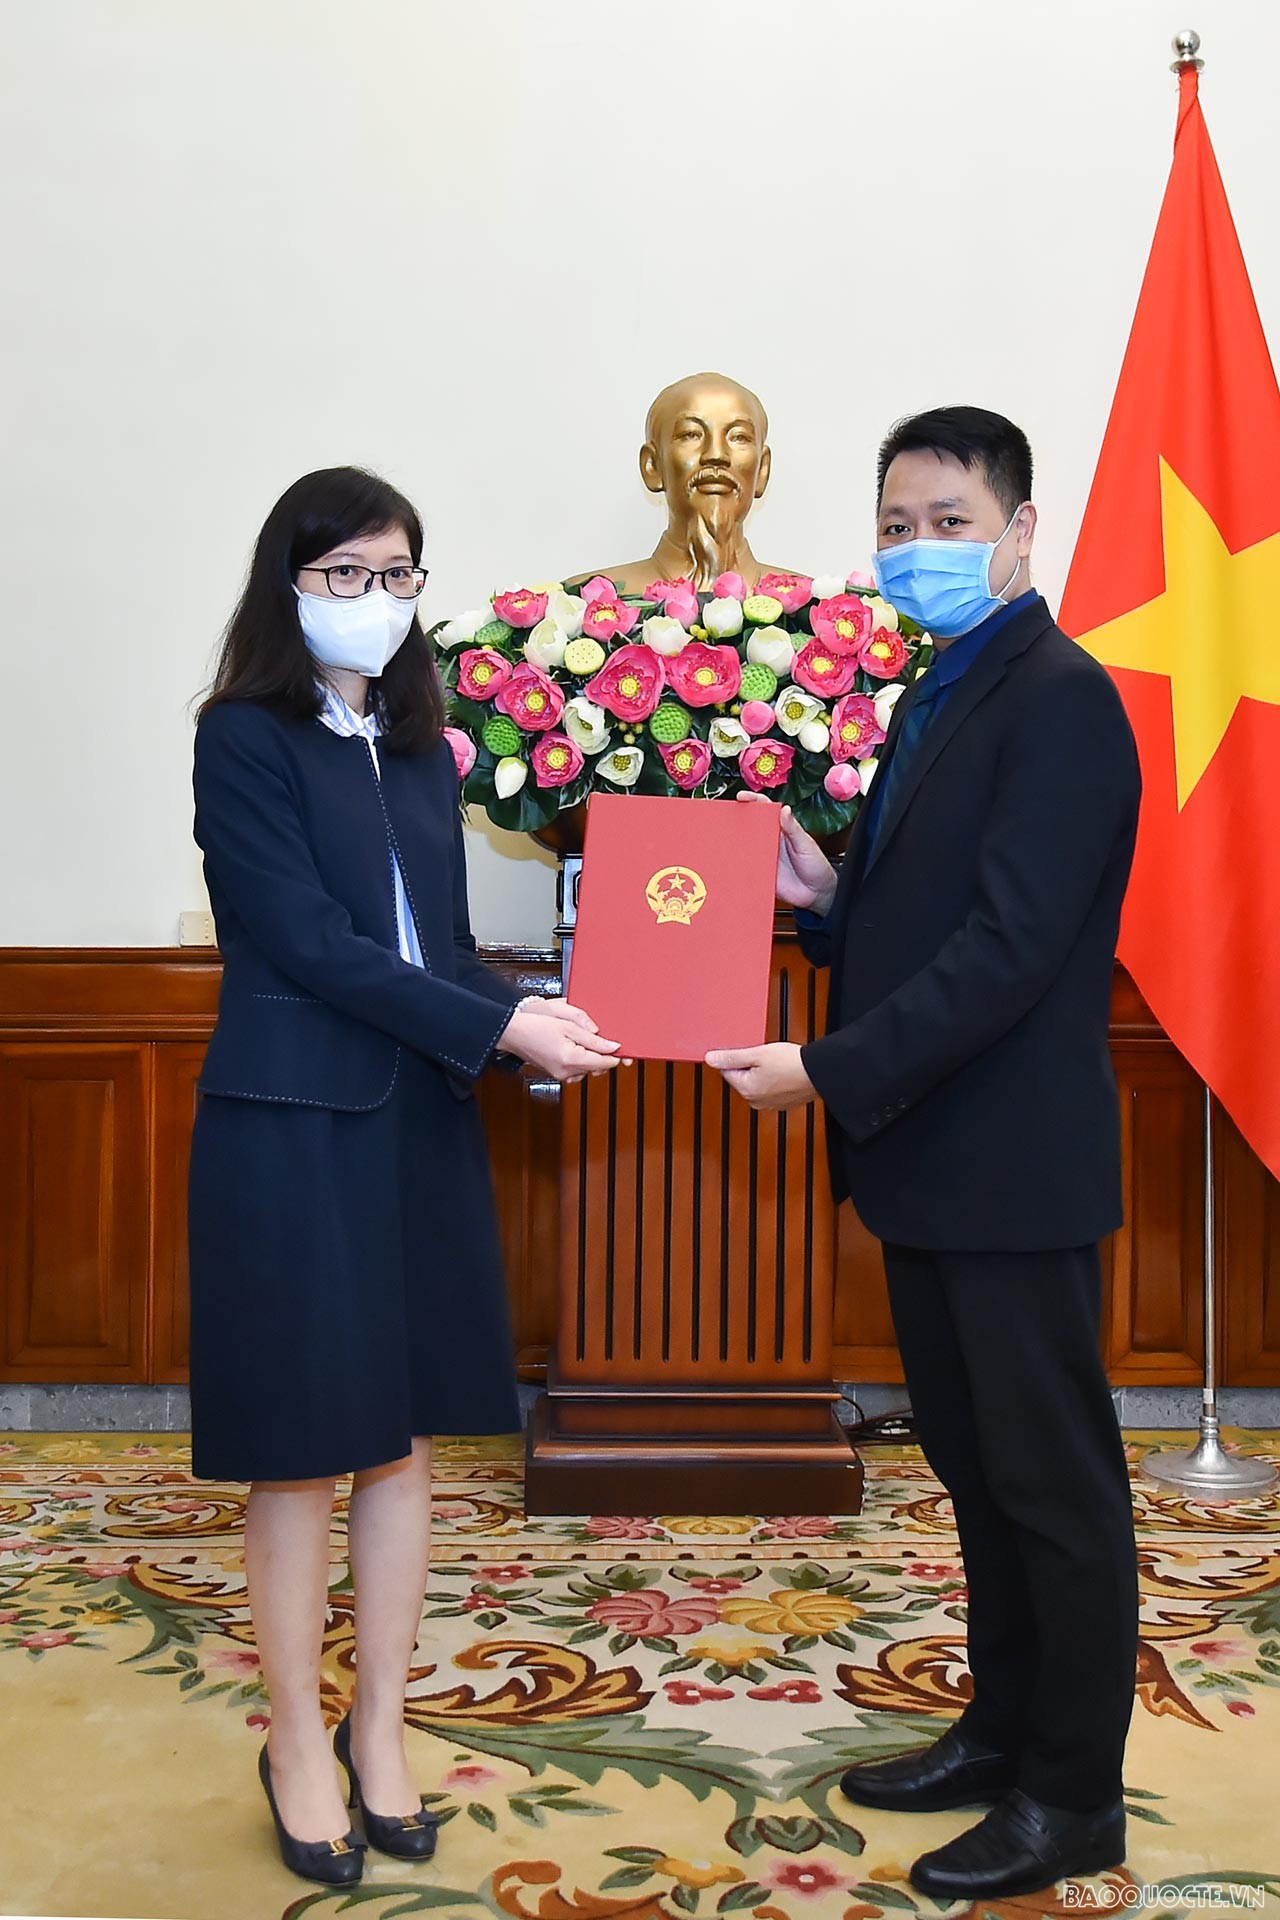 Phó Vụ trưởng phụ trách Vụ Tổ chức Cán bộ Nguyễn Việt Anh đã trao quyết định công nhận bà Phan Thị Minh Giang, là Tập sự Phó Cục trưởng, Cục Lãnh sự.